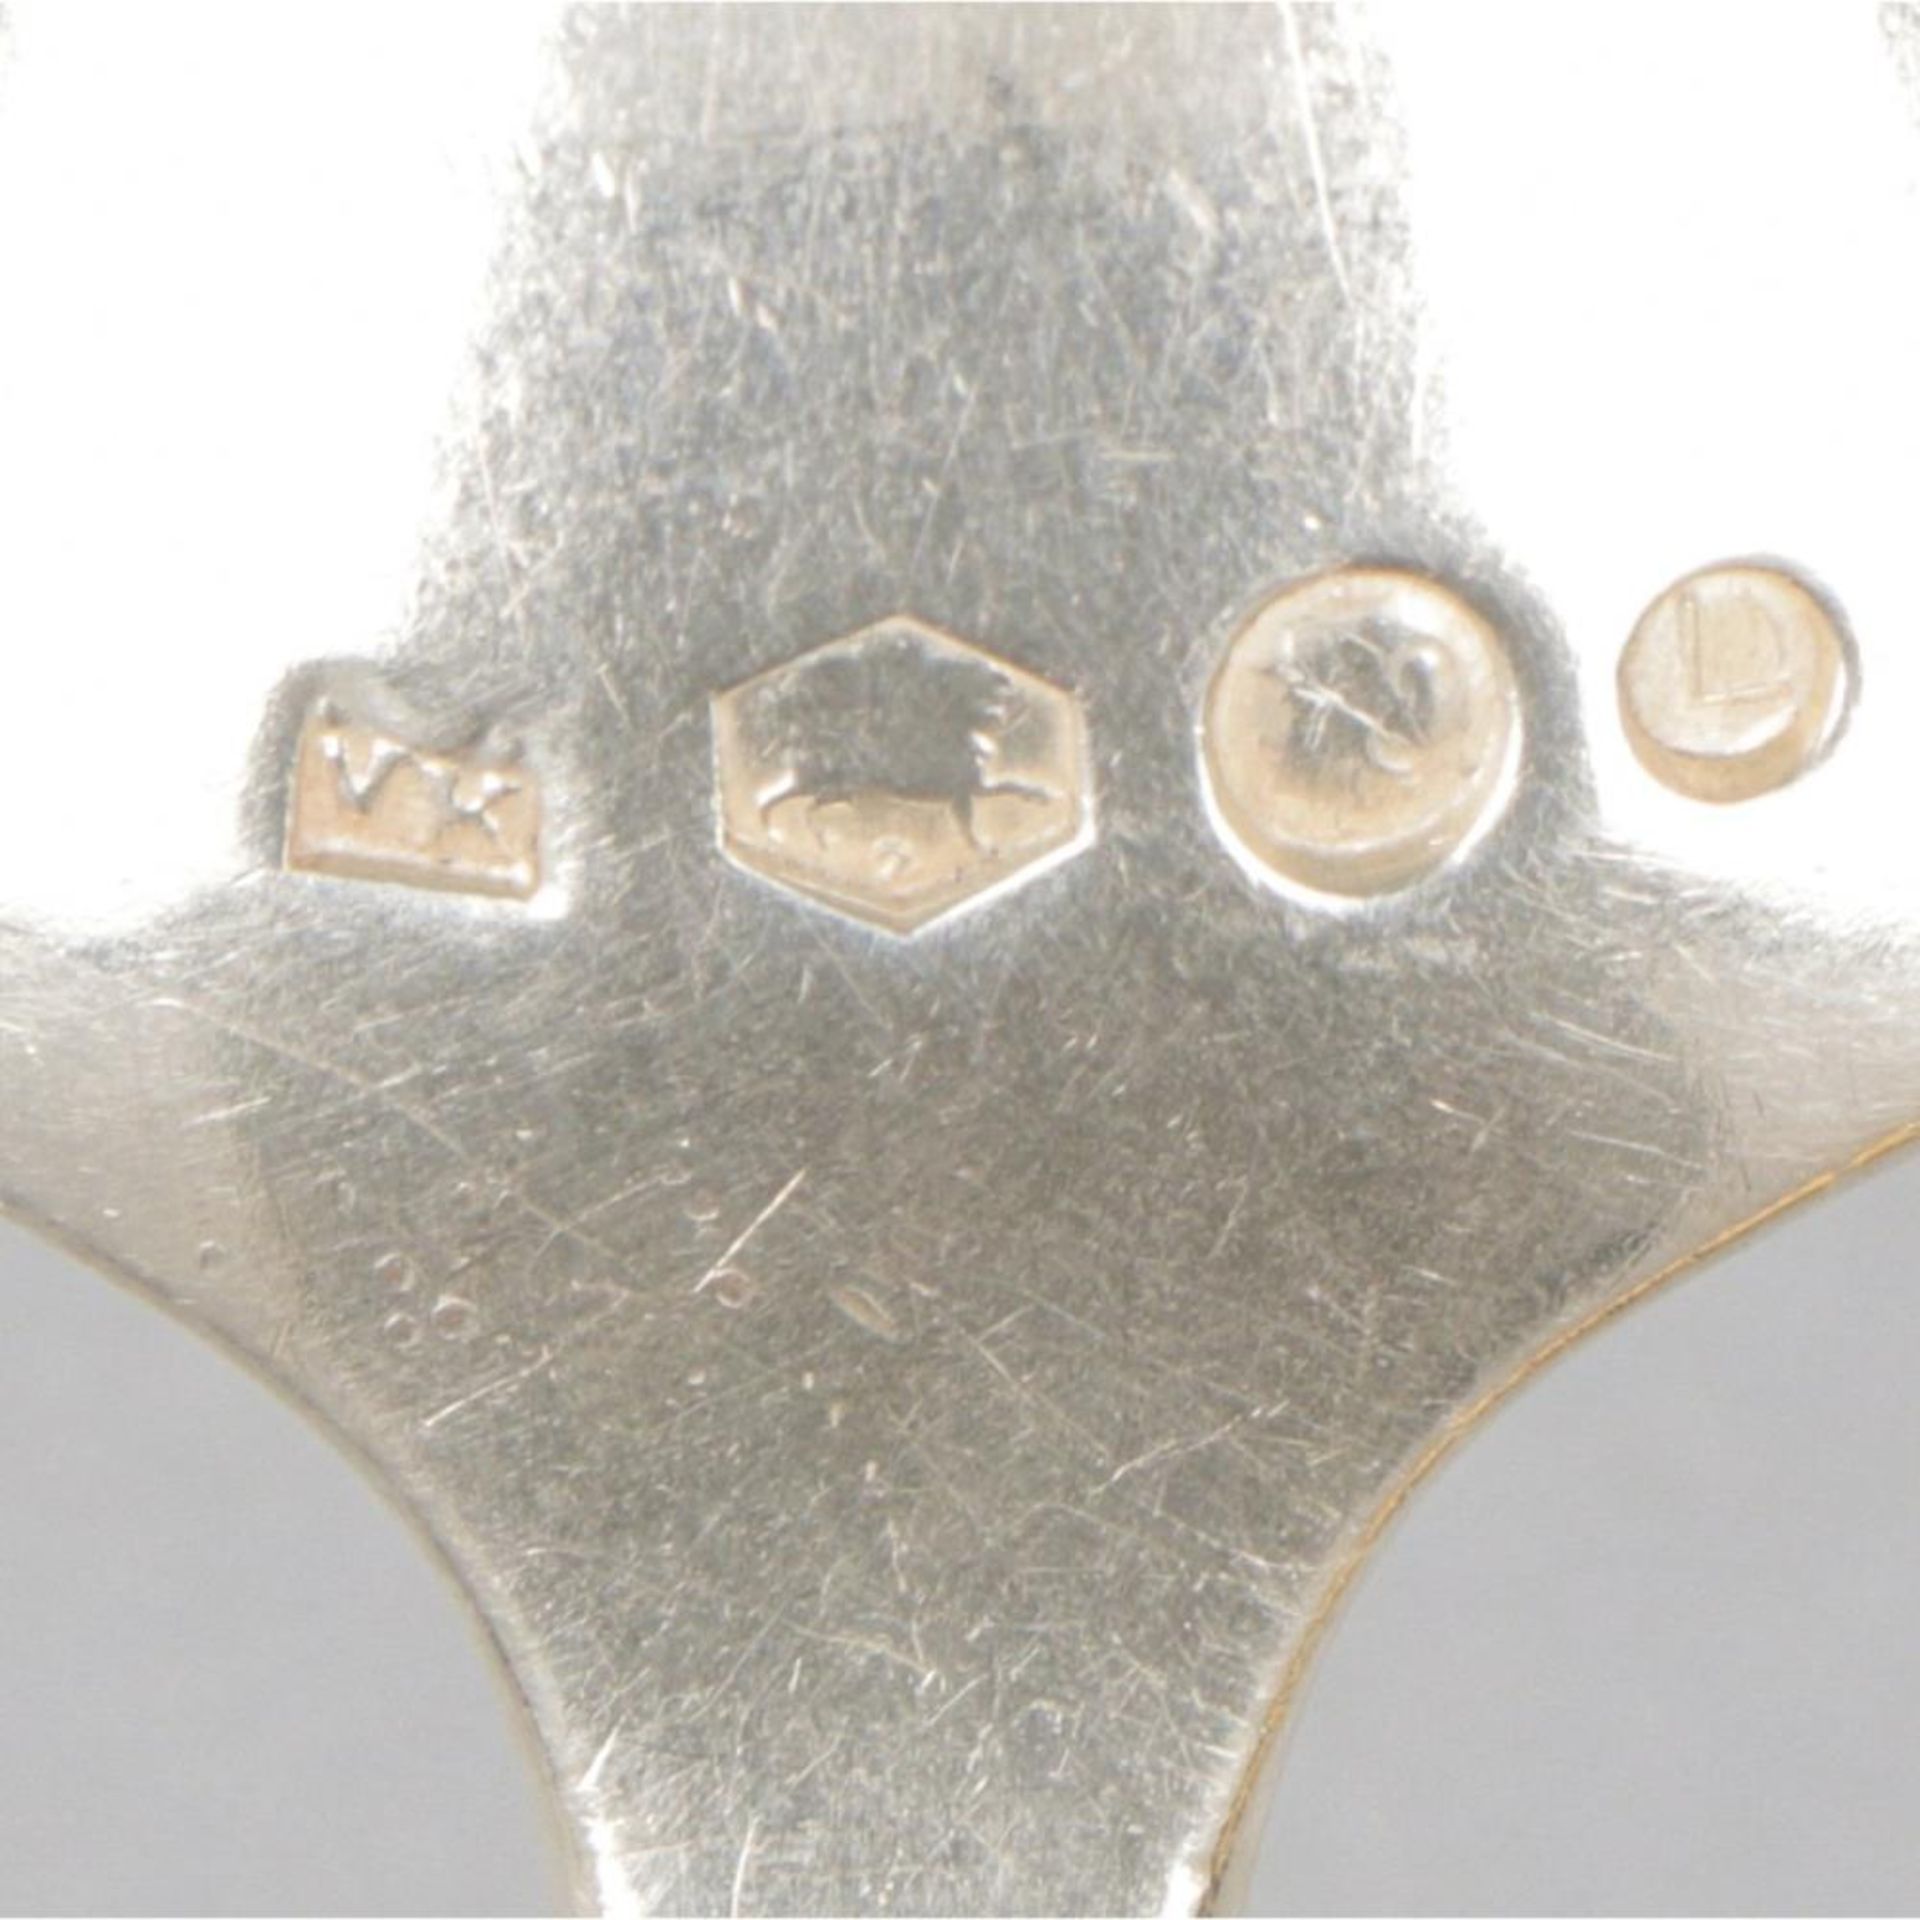 3-piece set of ladles "Hollands Puntfilet" silver. - Image 5 of 7